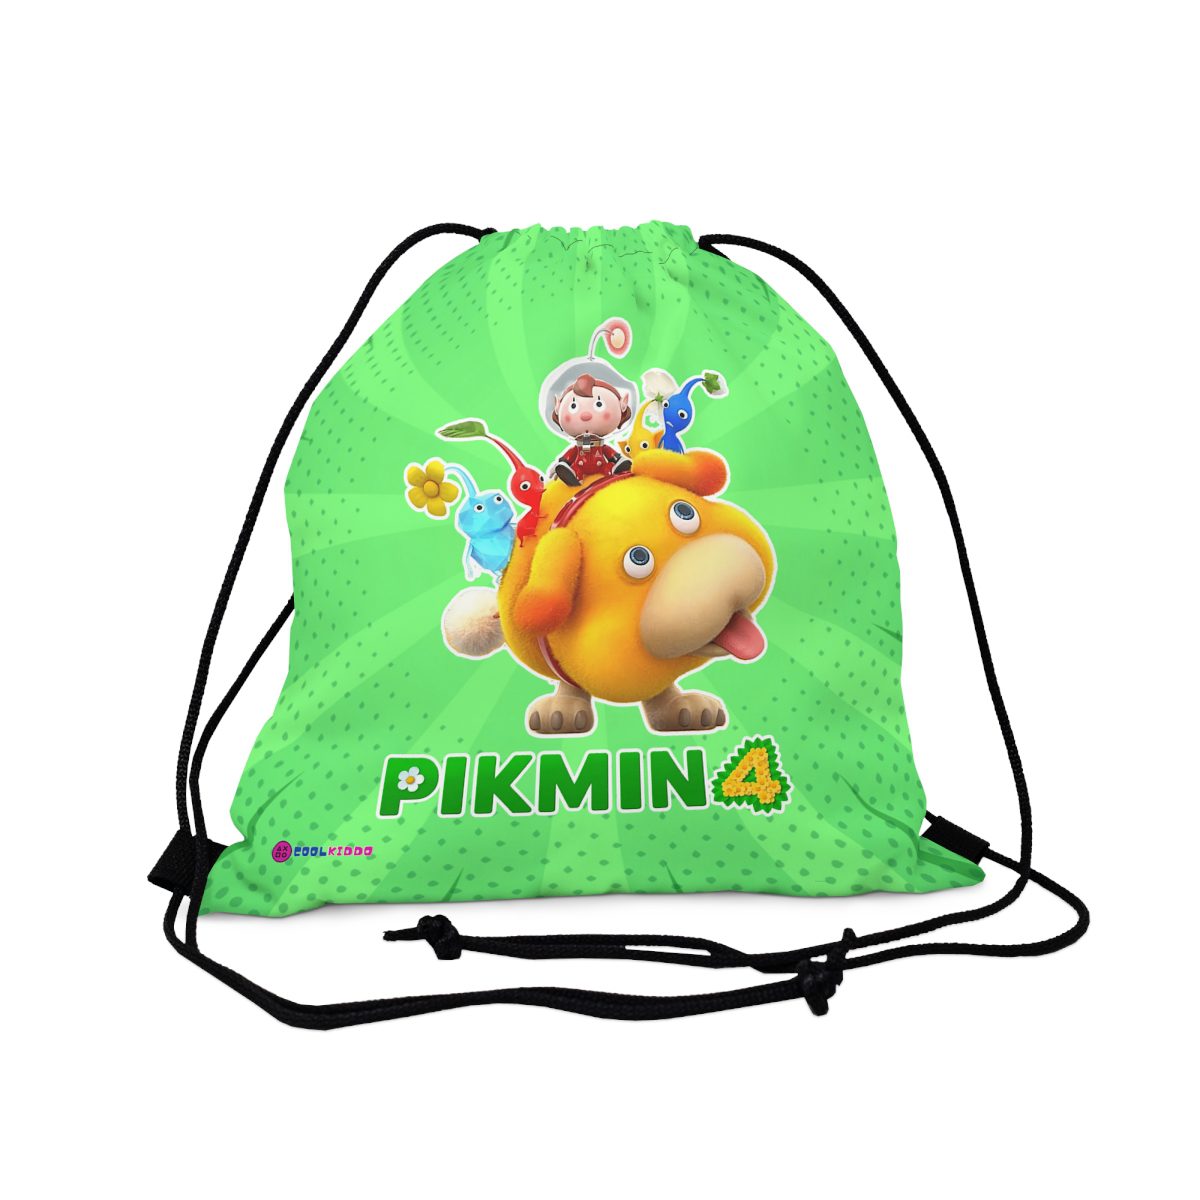 Nintendo PIKMIN 4 Video Game Outdoor Drawstring Bag Cool Kiddo 14